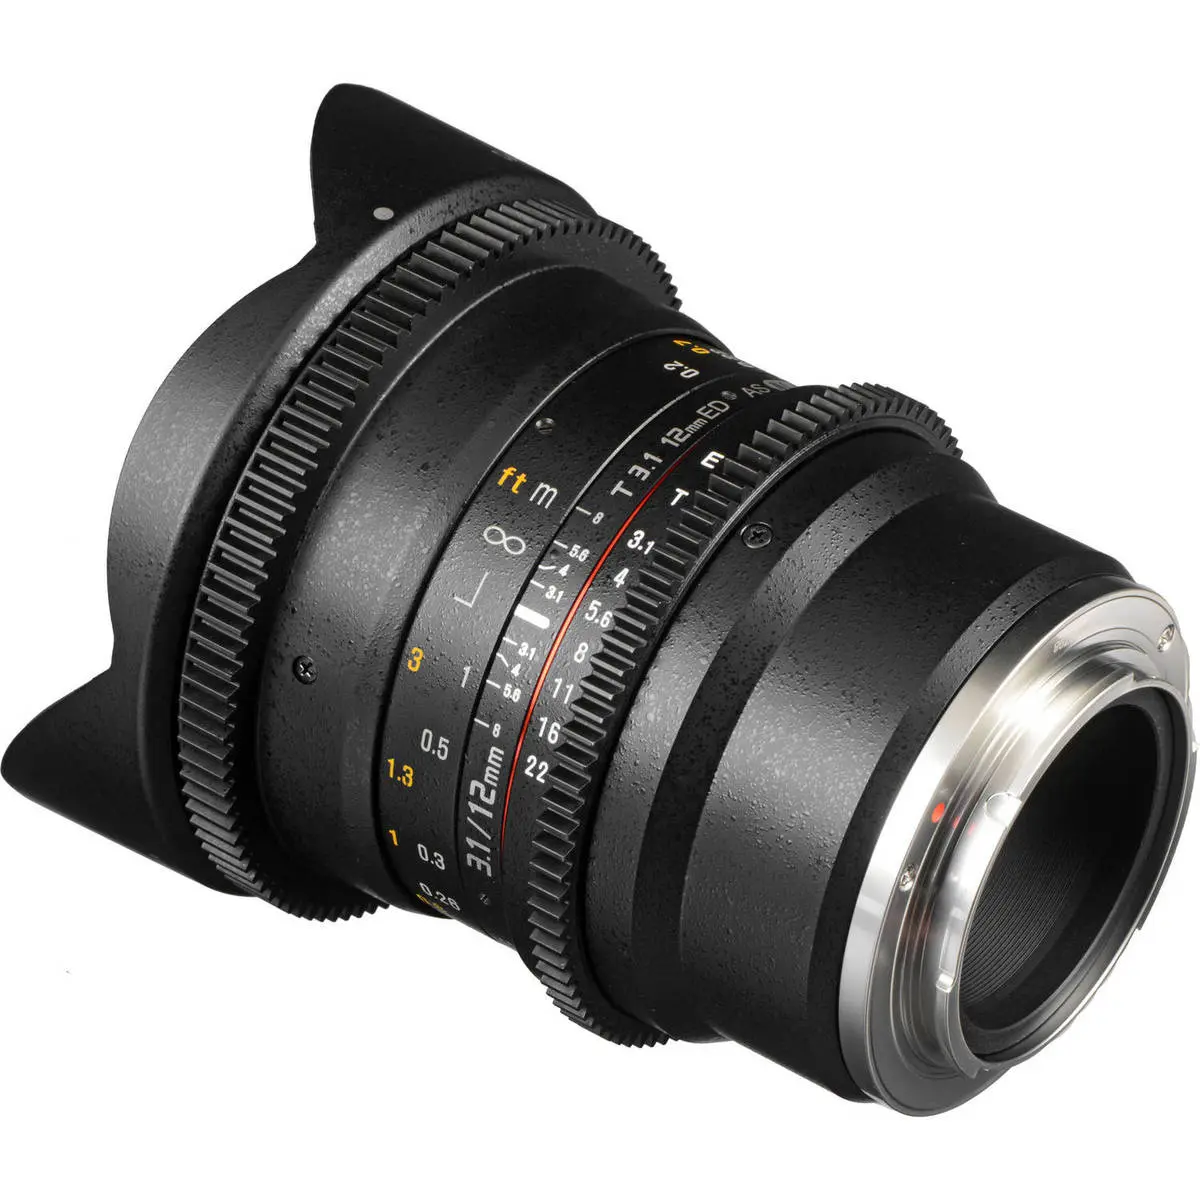 2. Samyang 12mm T3.1 VDSLR ED AS NCS Fisheye (Sony A) Lens